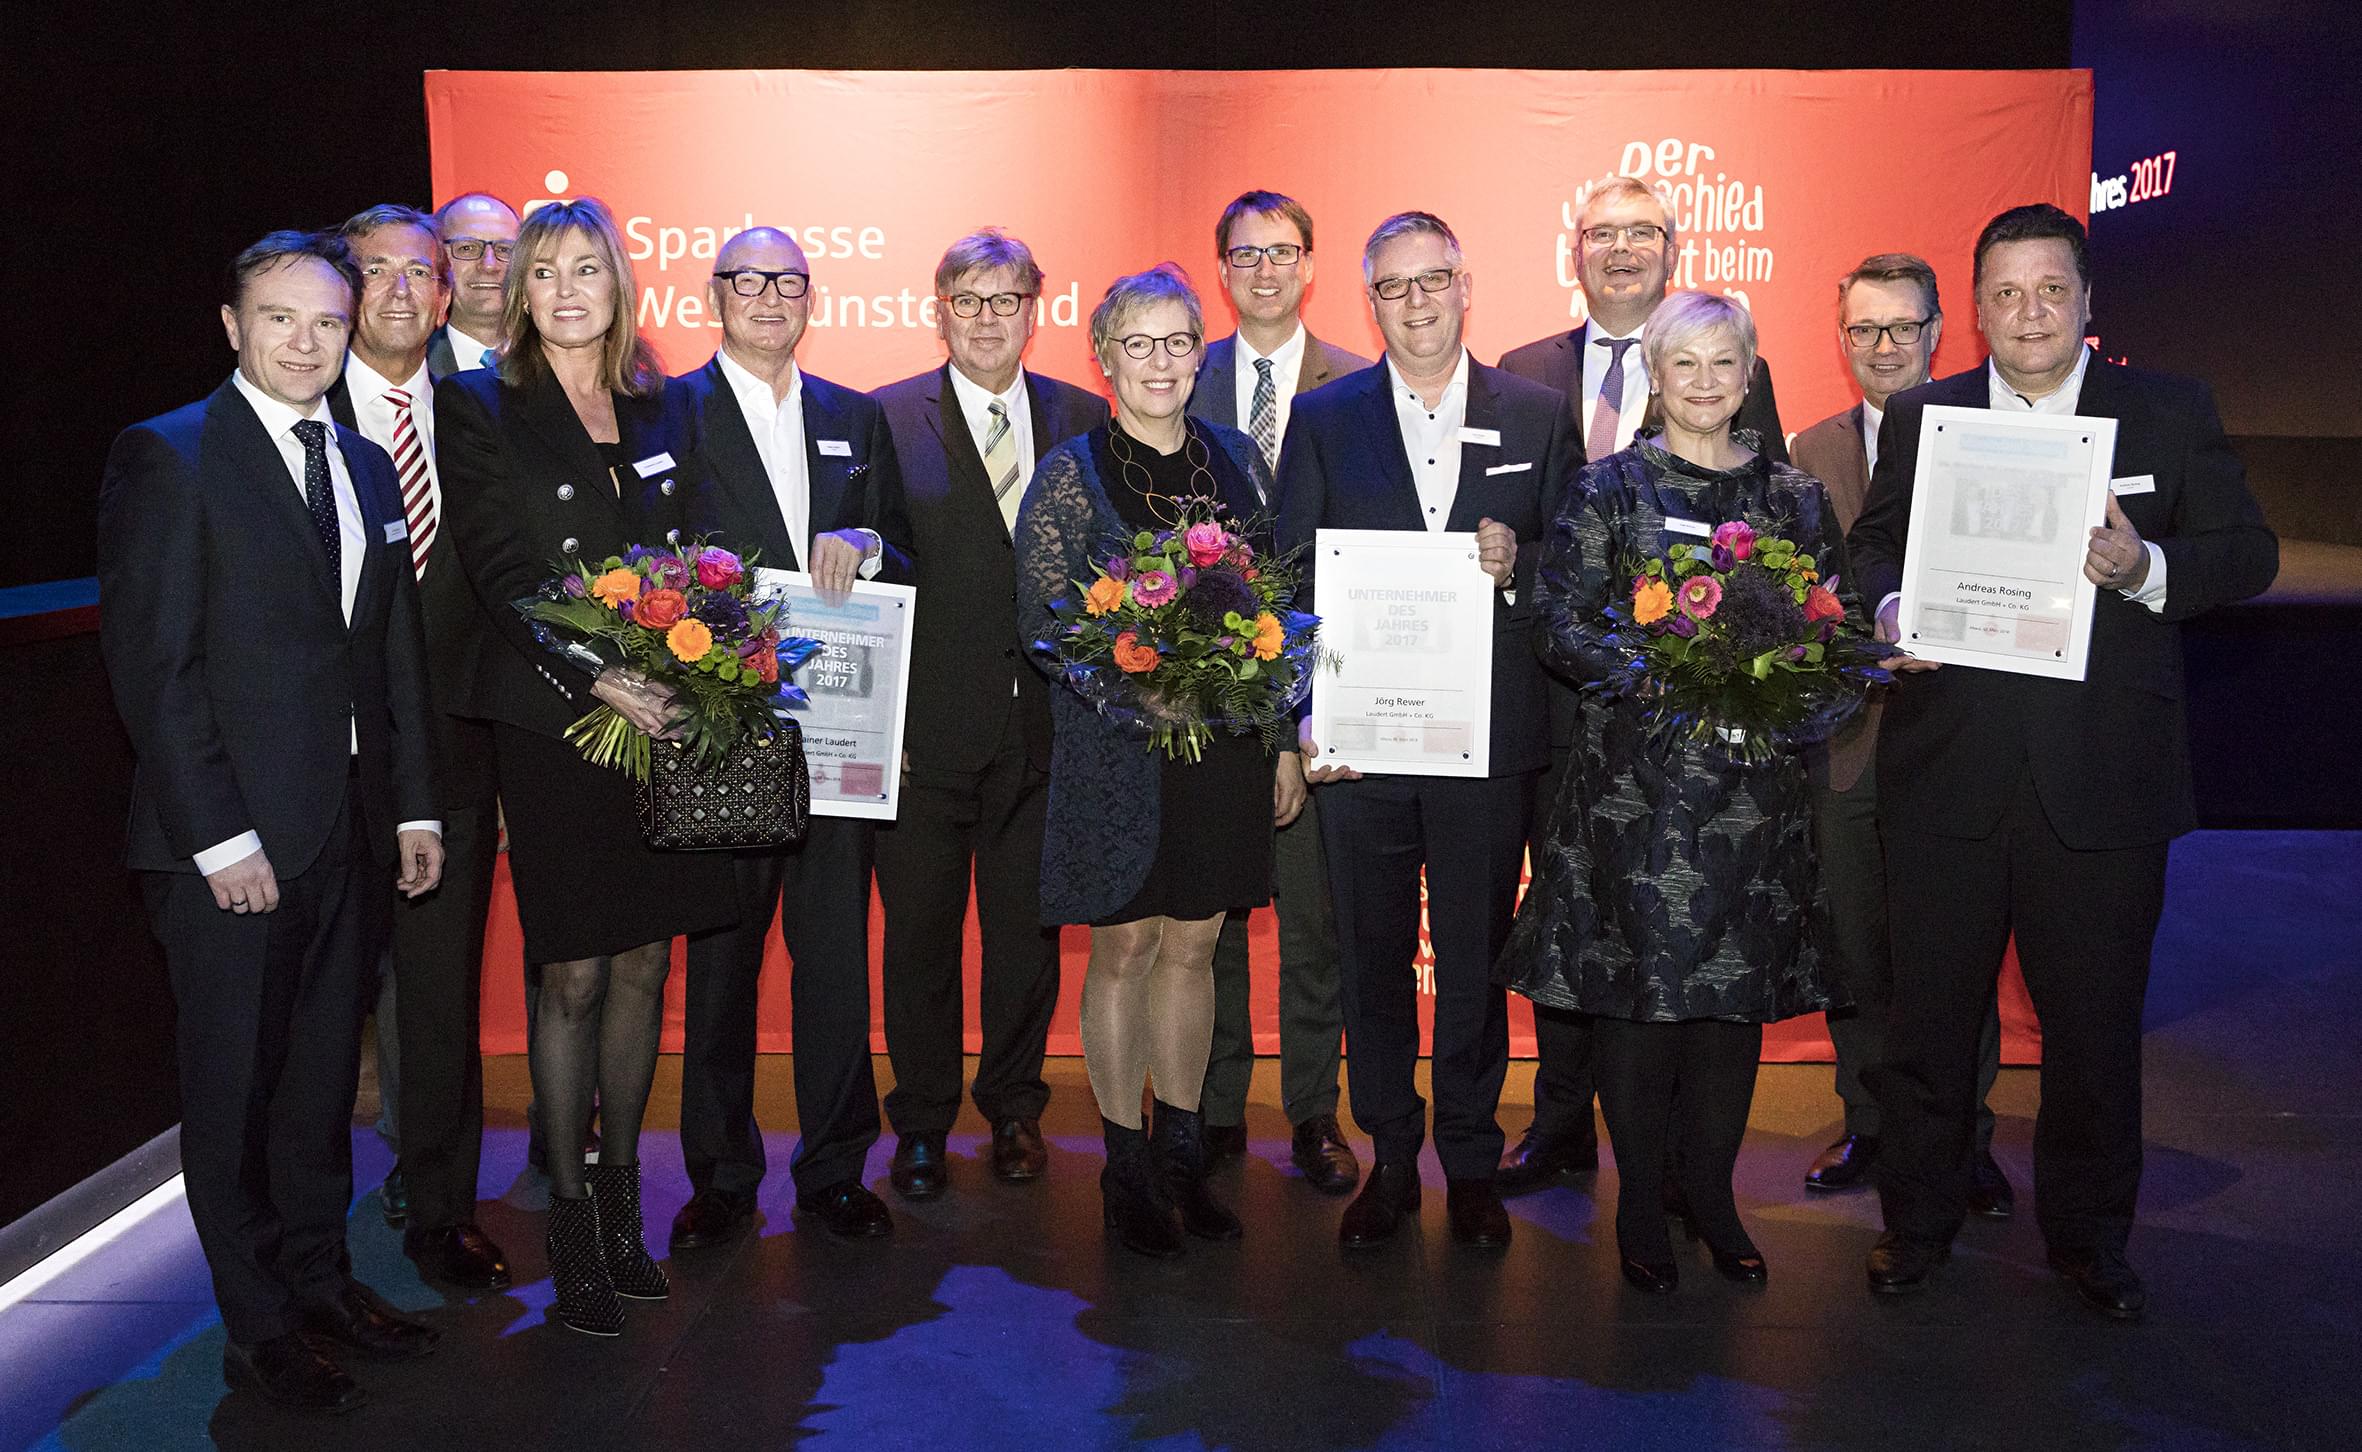 Rainer Laudert, Jörg Rewer und Andres Rosing wurden im Rahmen einer Gala als Unternehmer des Jahres geehrt